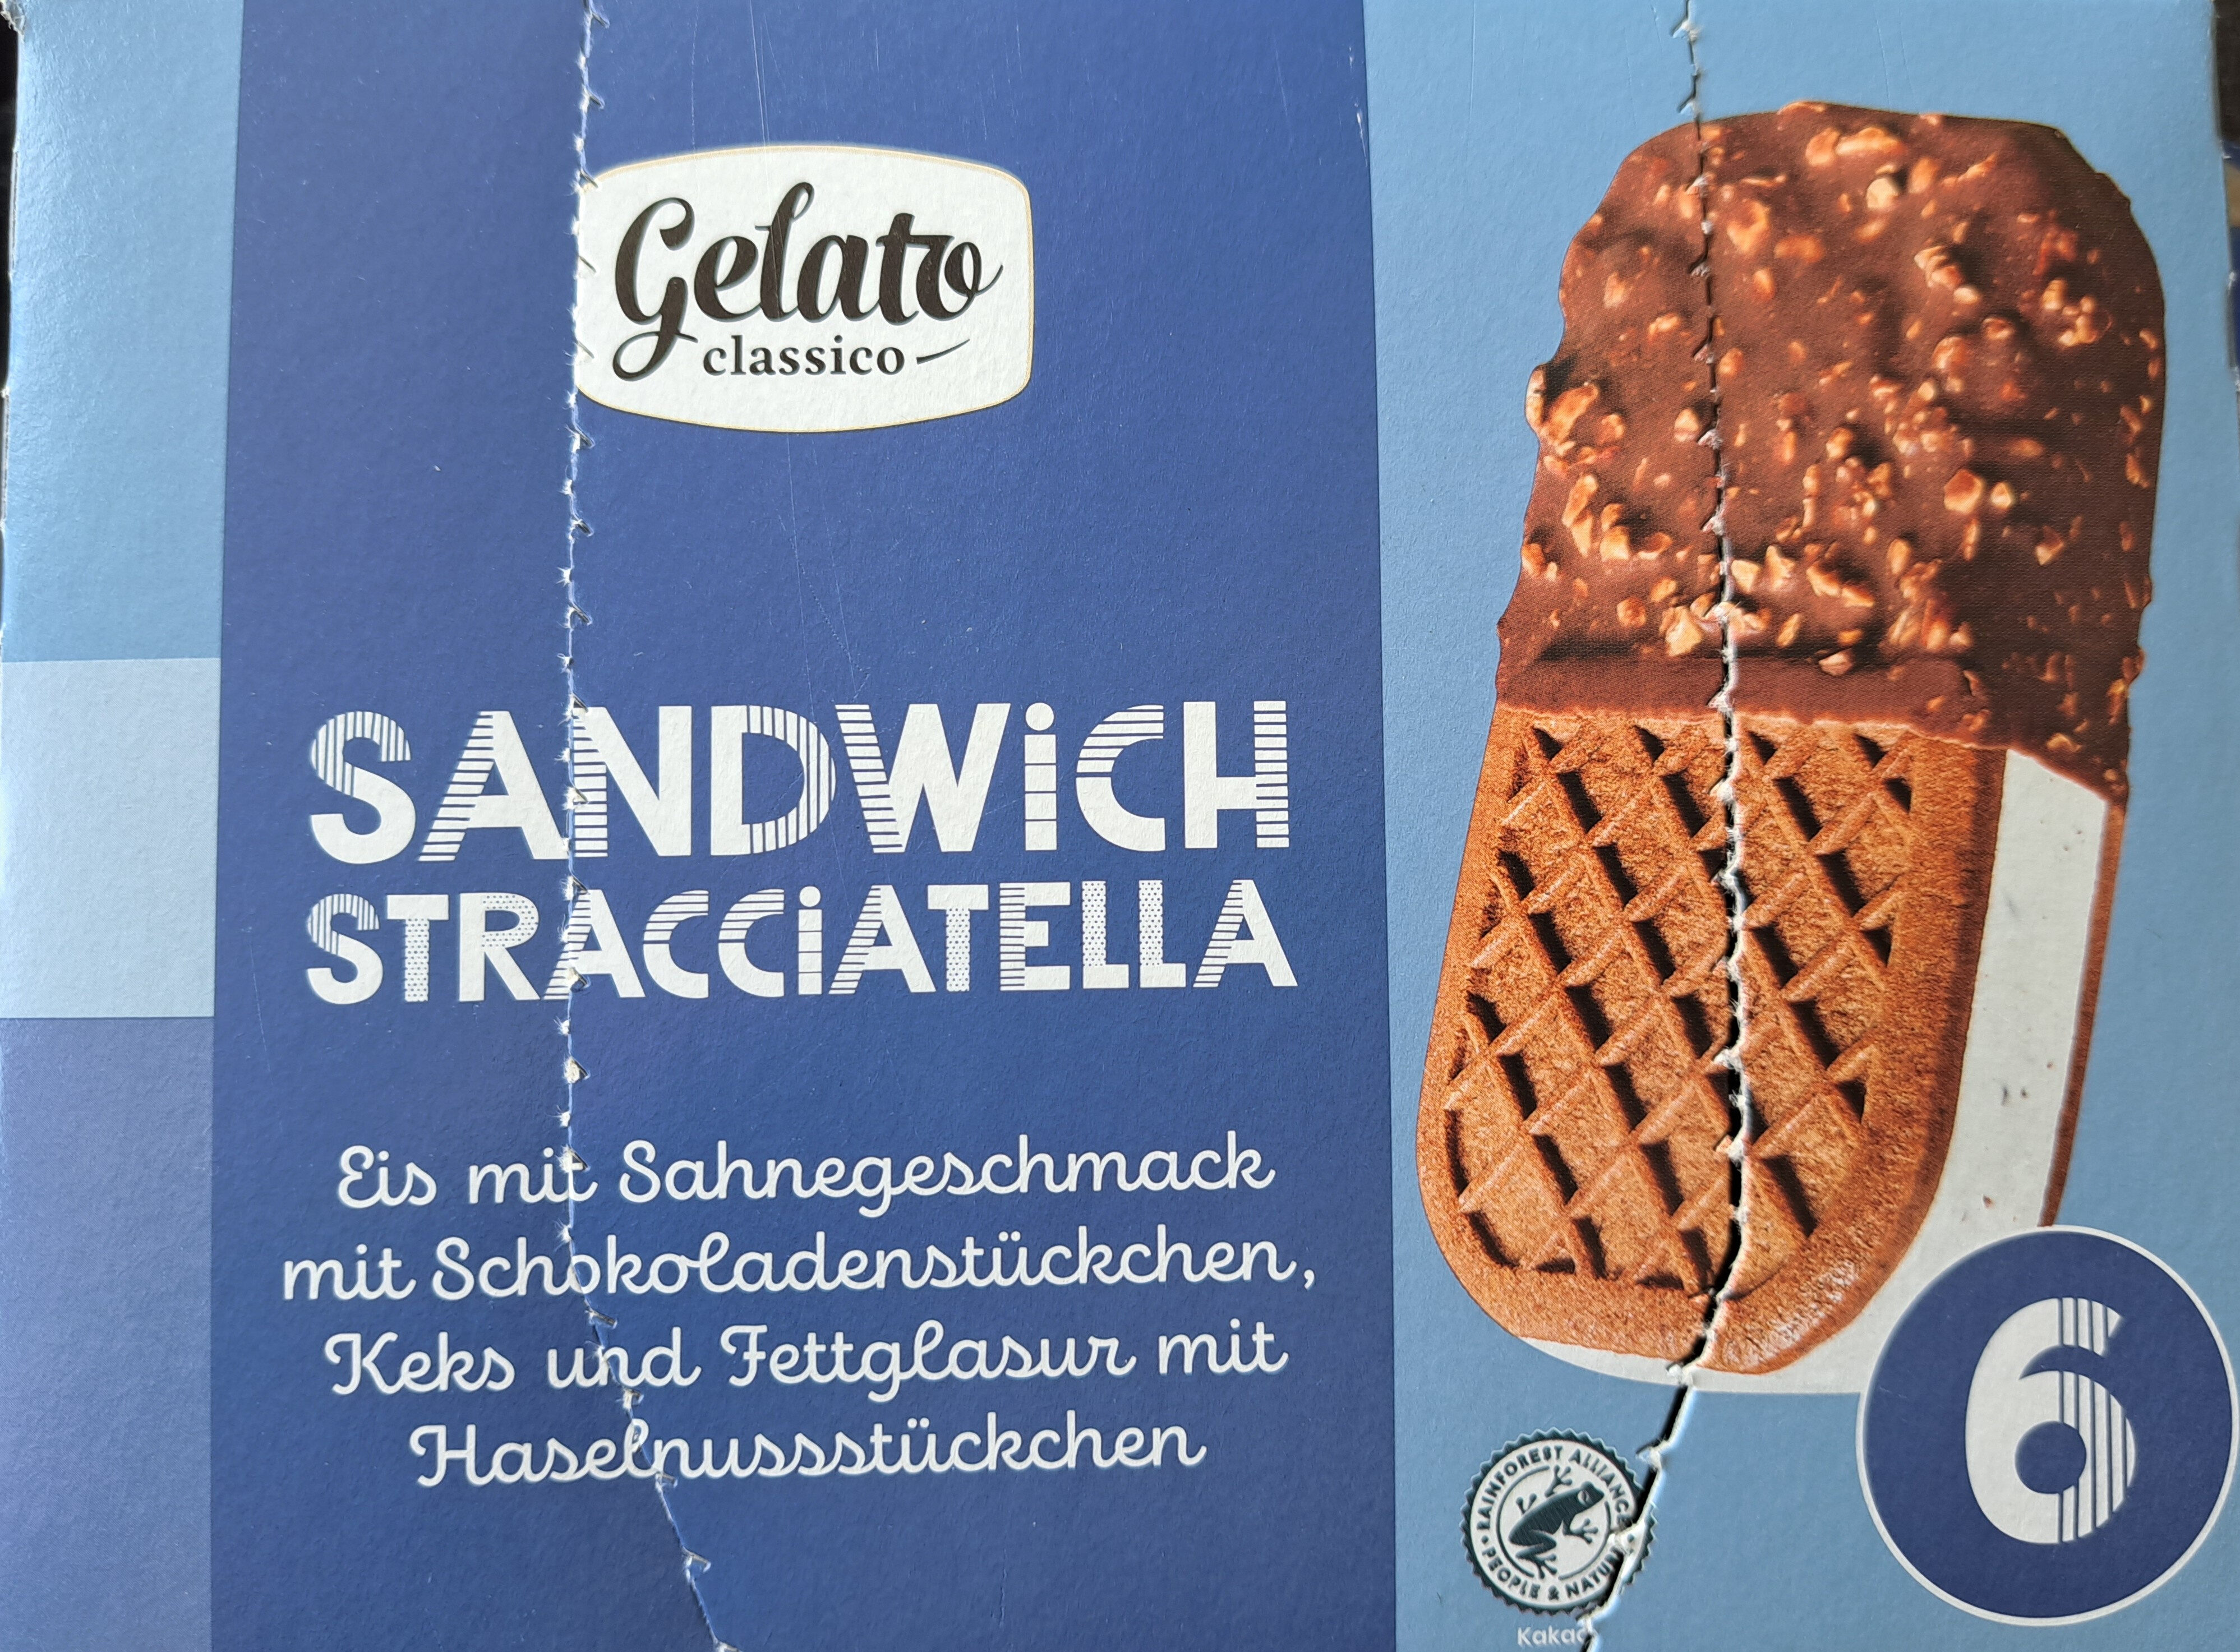 Eis mit Sahnegeschmack mit Schokoladenstückchen, kakaohaltigem Keks und kakaohaltiger Fettglasur mit Haselnussstückchen - Product - de